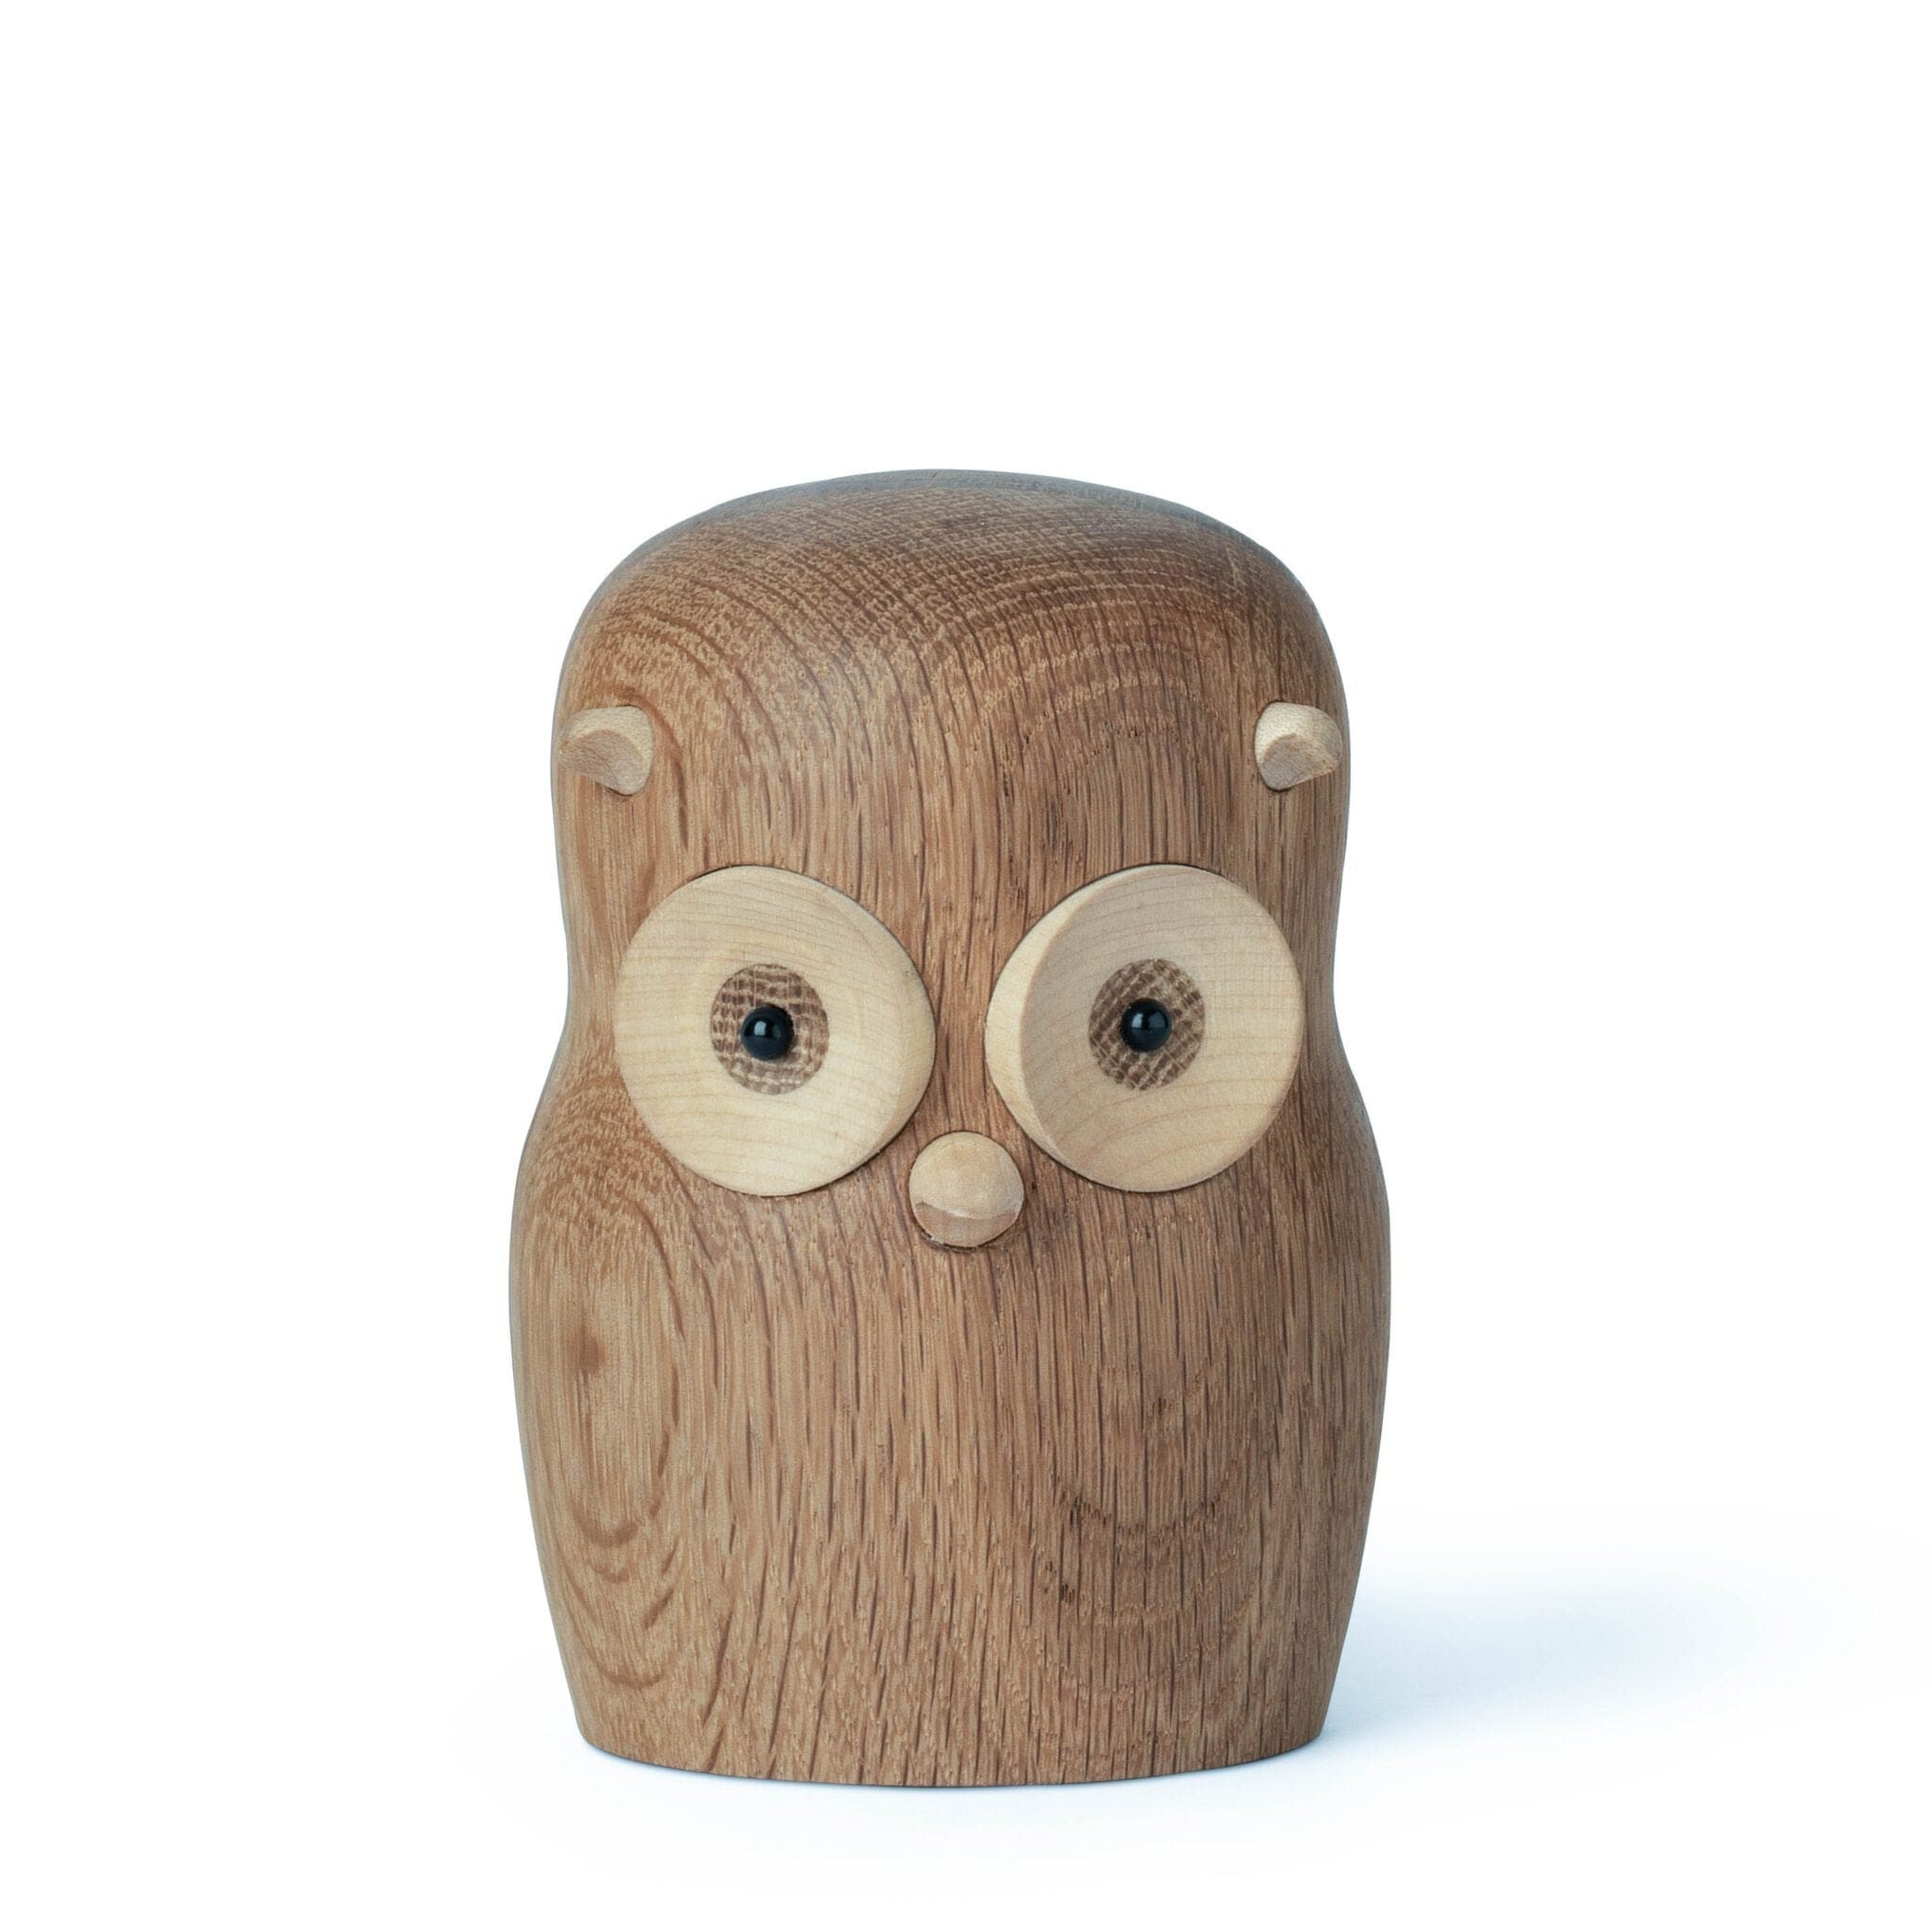 Gunnar Flørning Owl Figure in legno, 12 cm